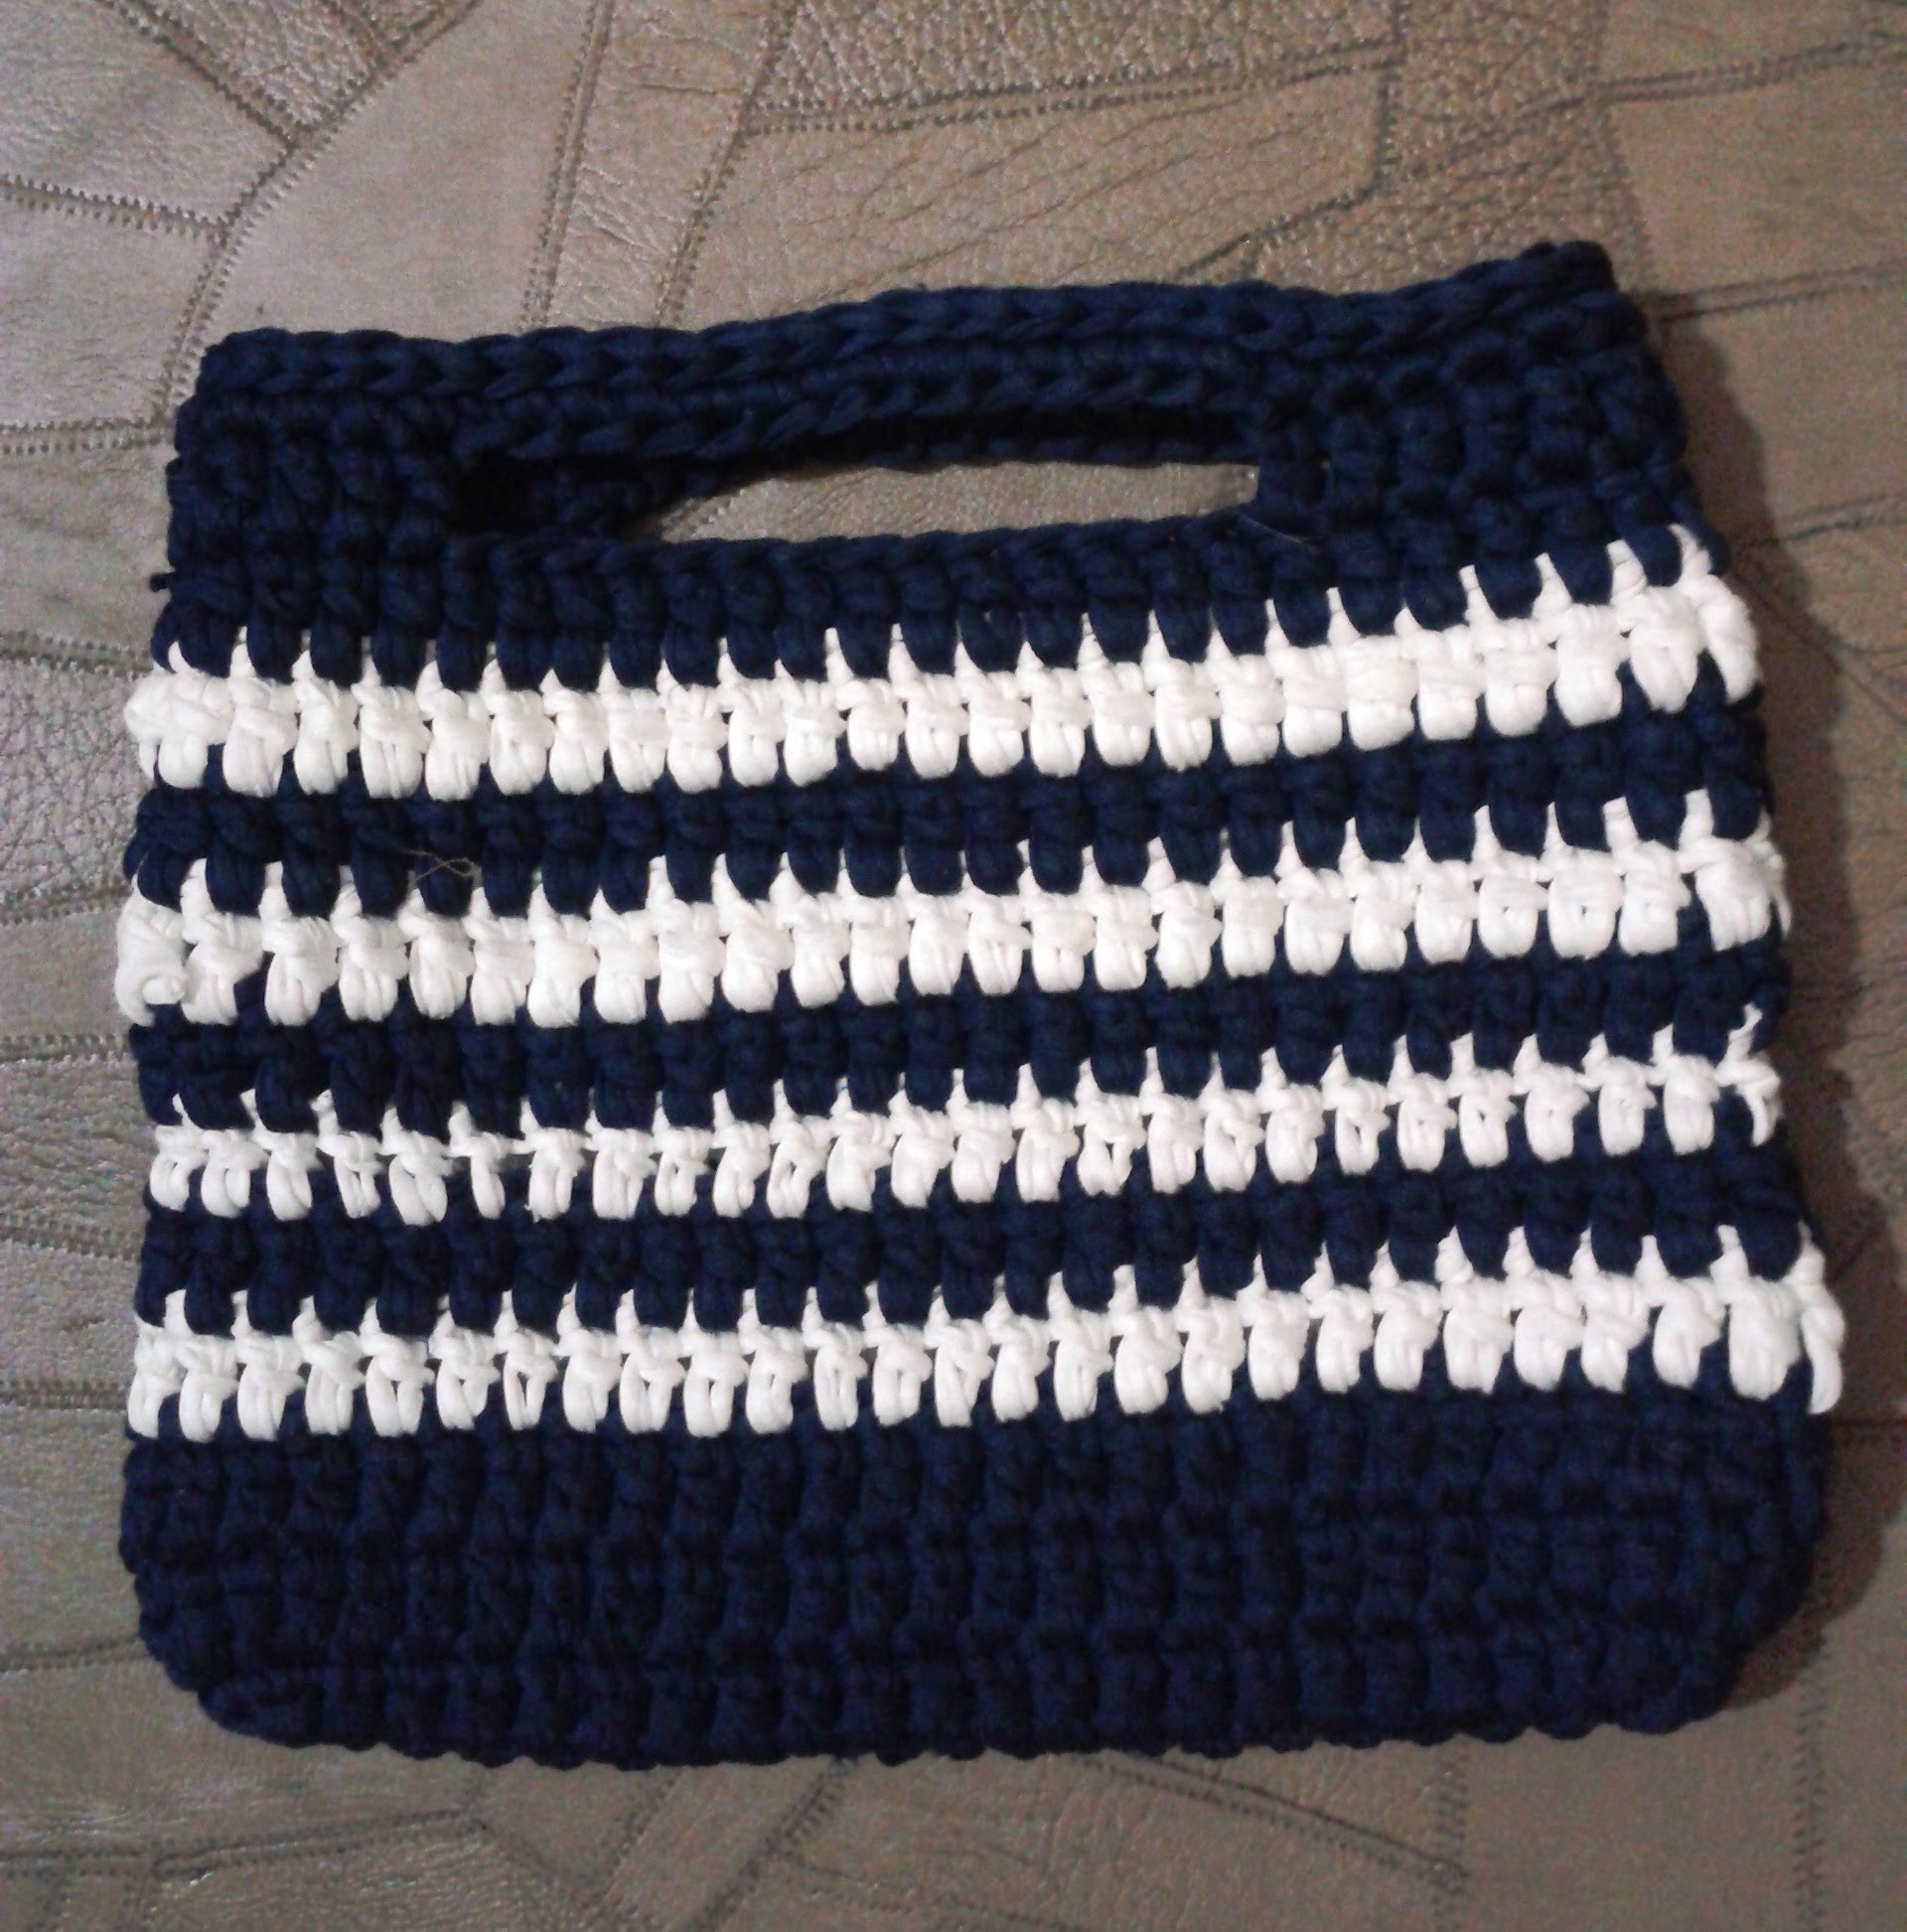 DIY bolsa de trapilhos em croche duas cores